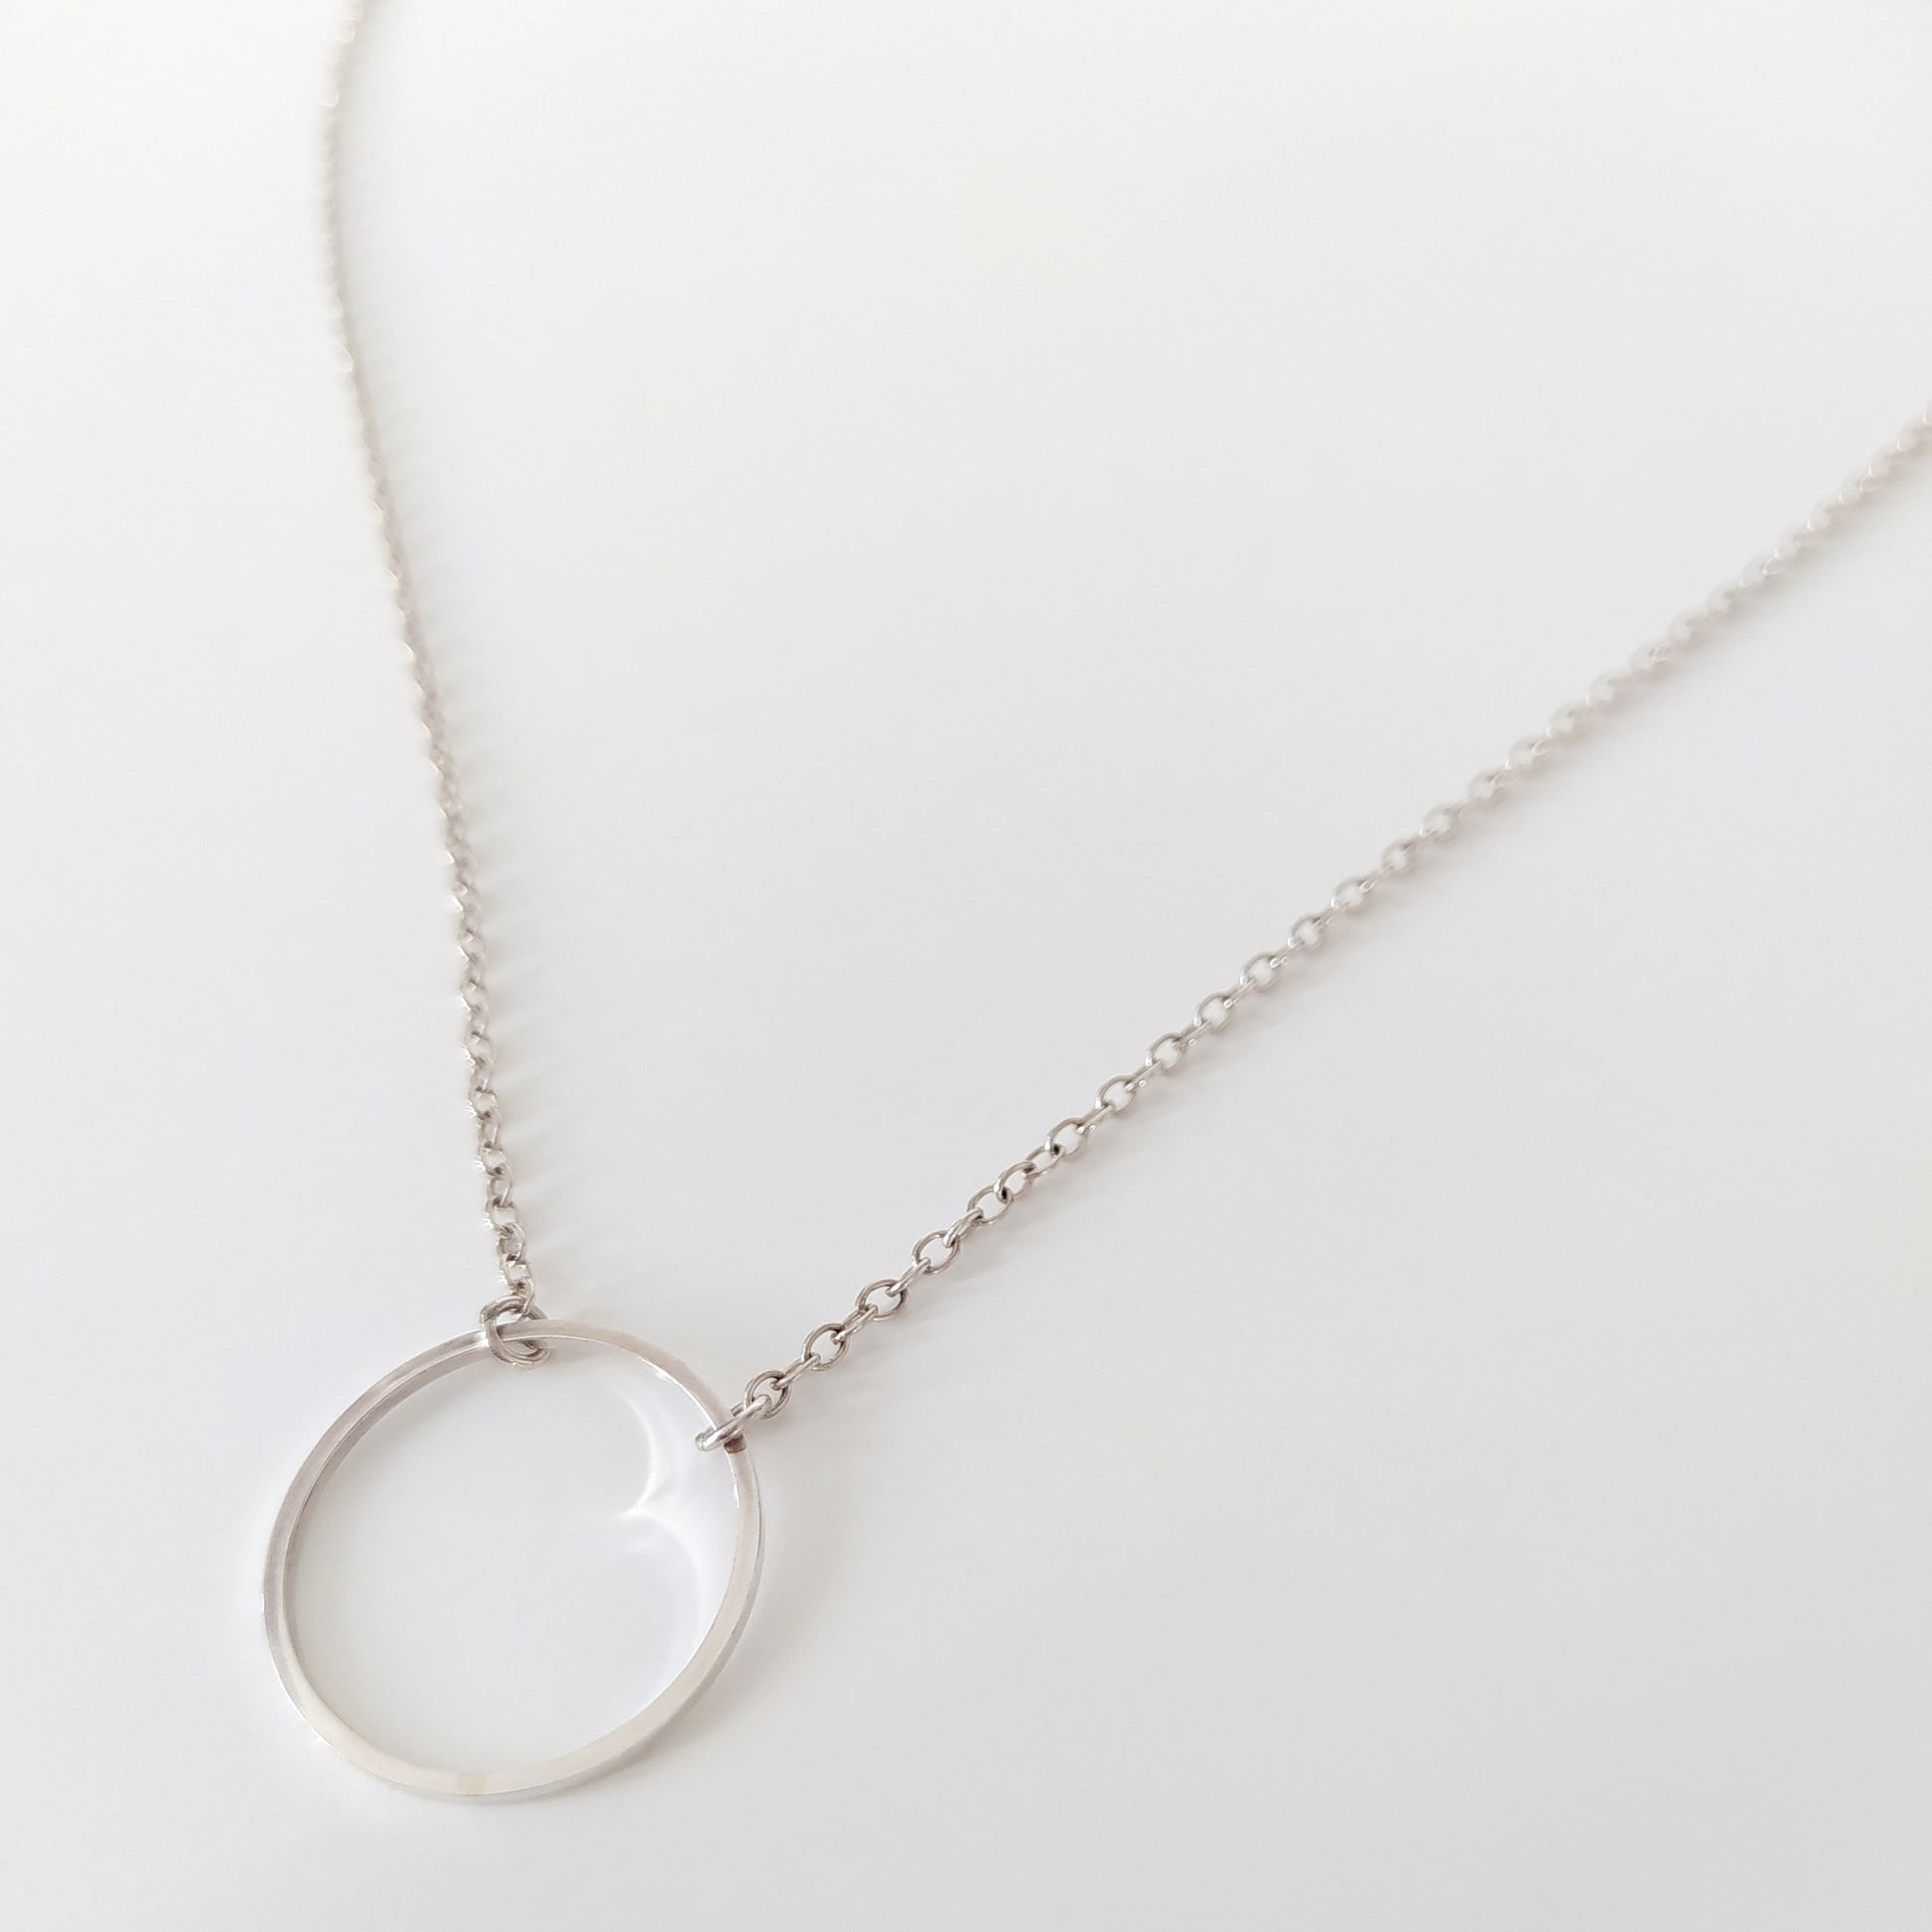 Runa  dainty silver chain with circle pendant – Rebecca Wolf Design